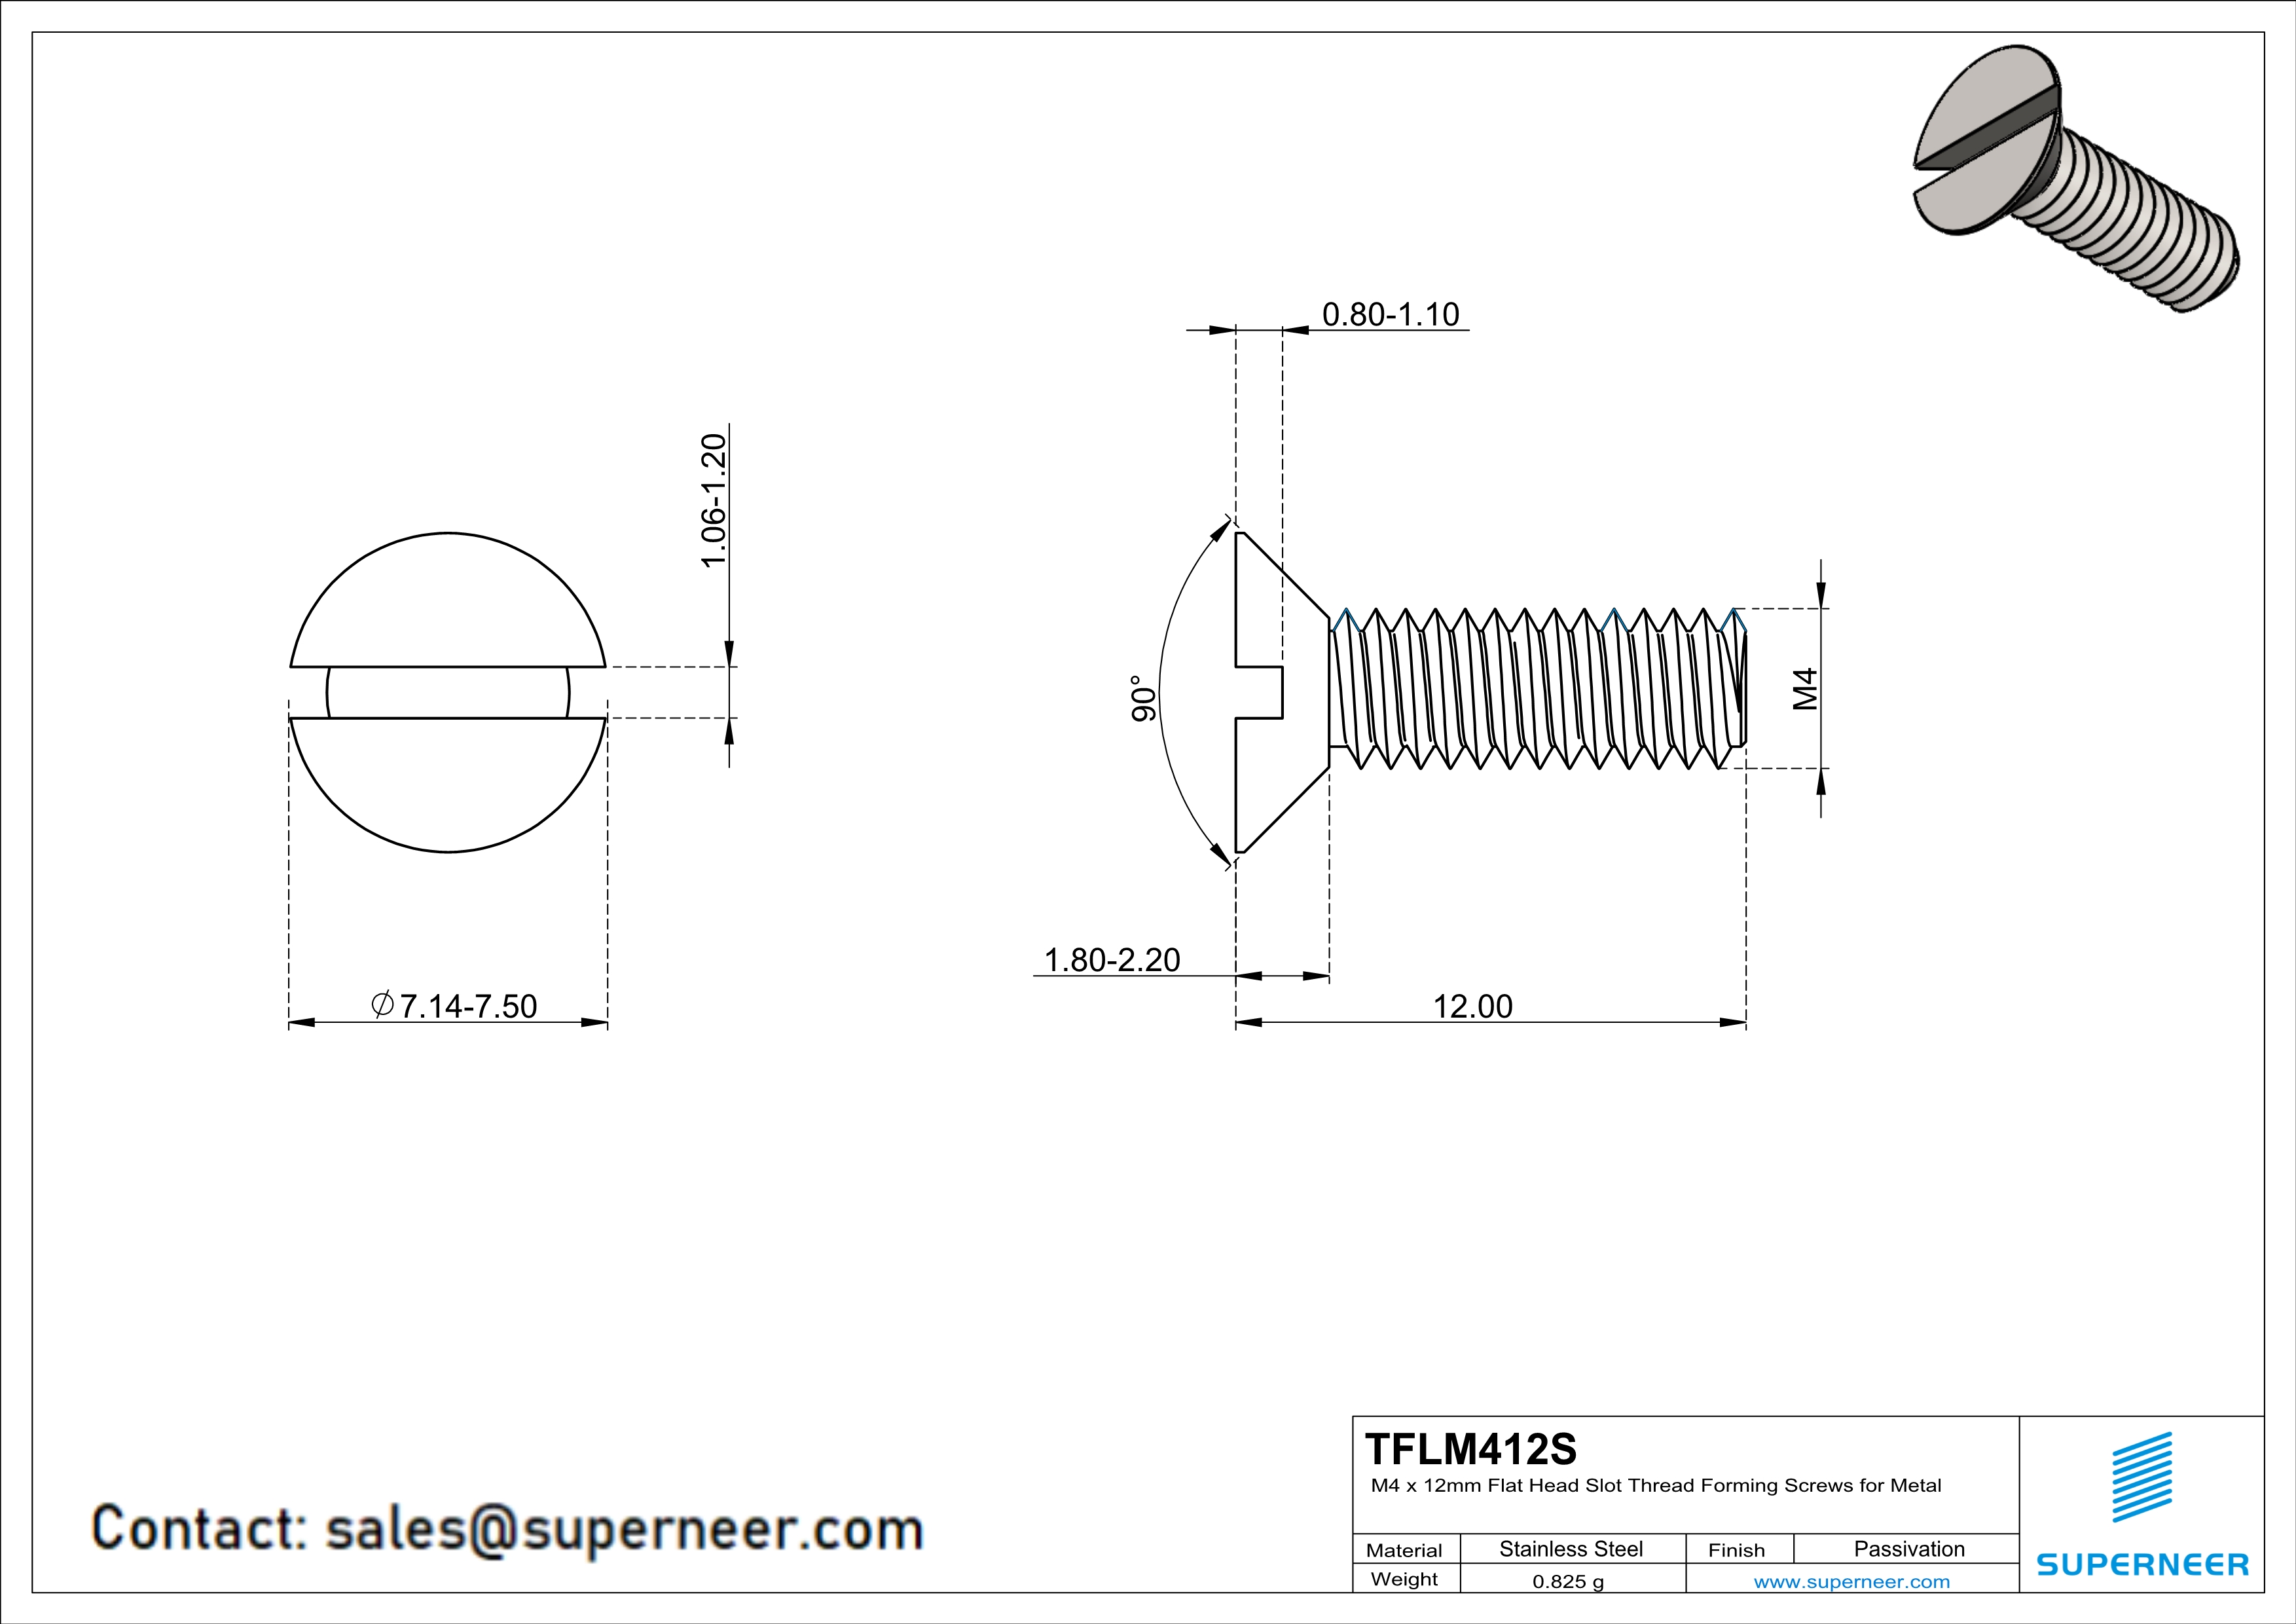 M4 × 12mm Flat Head Slot Thread Forming Screws for Metal SUS304 Stainless Steel Inox